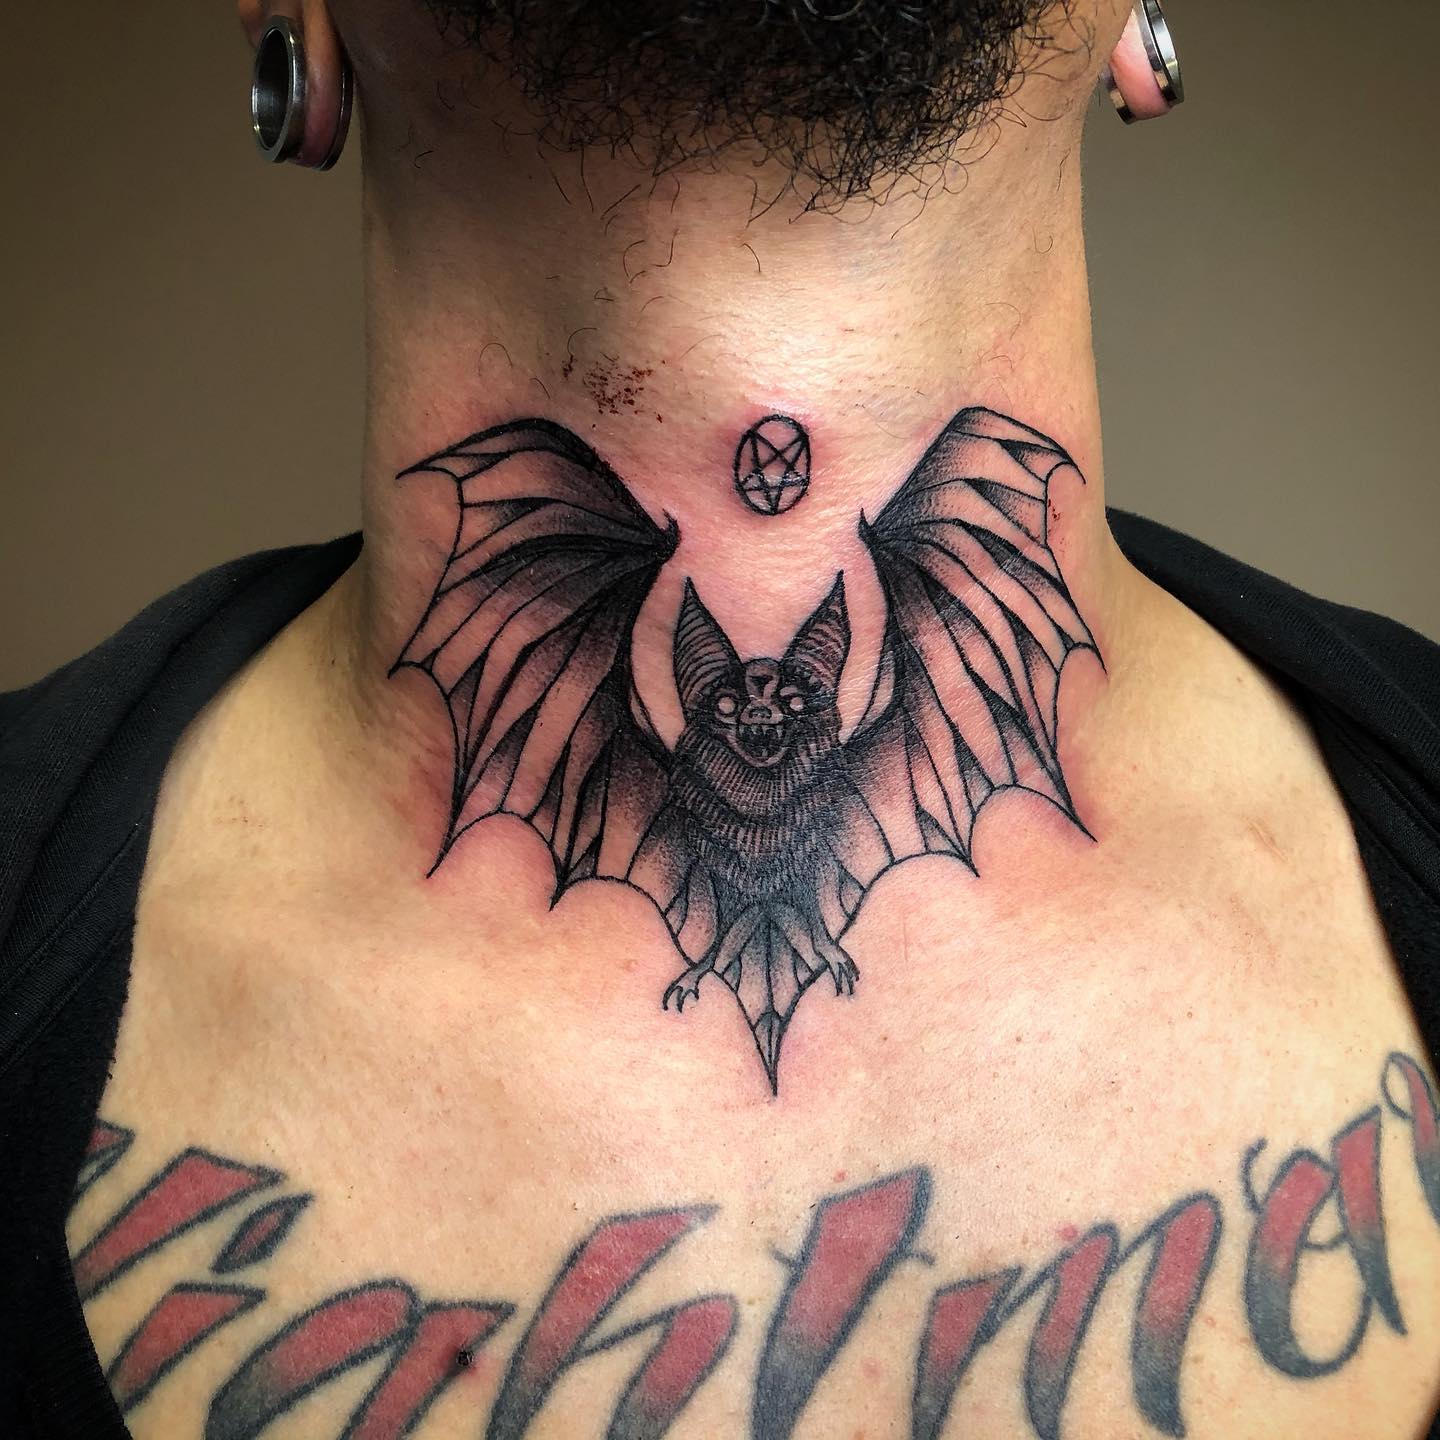 Badass Bat on Neck Tattoo Idea